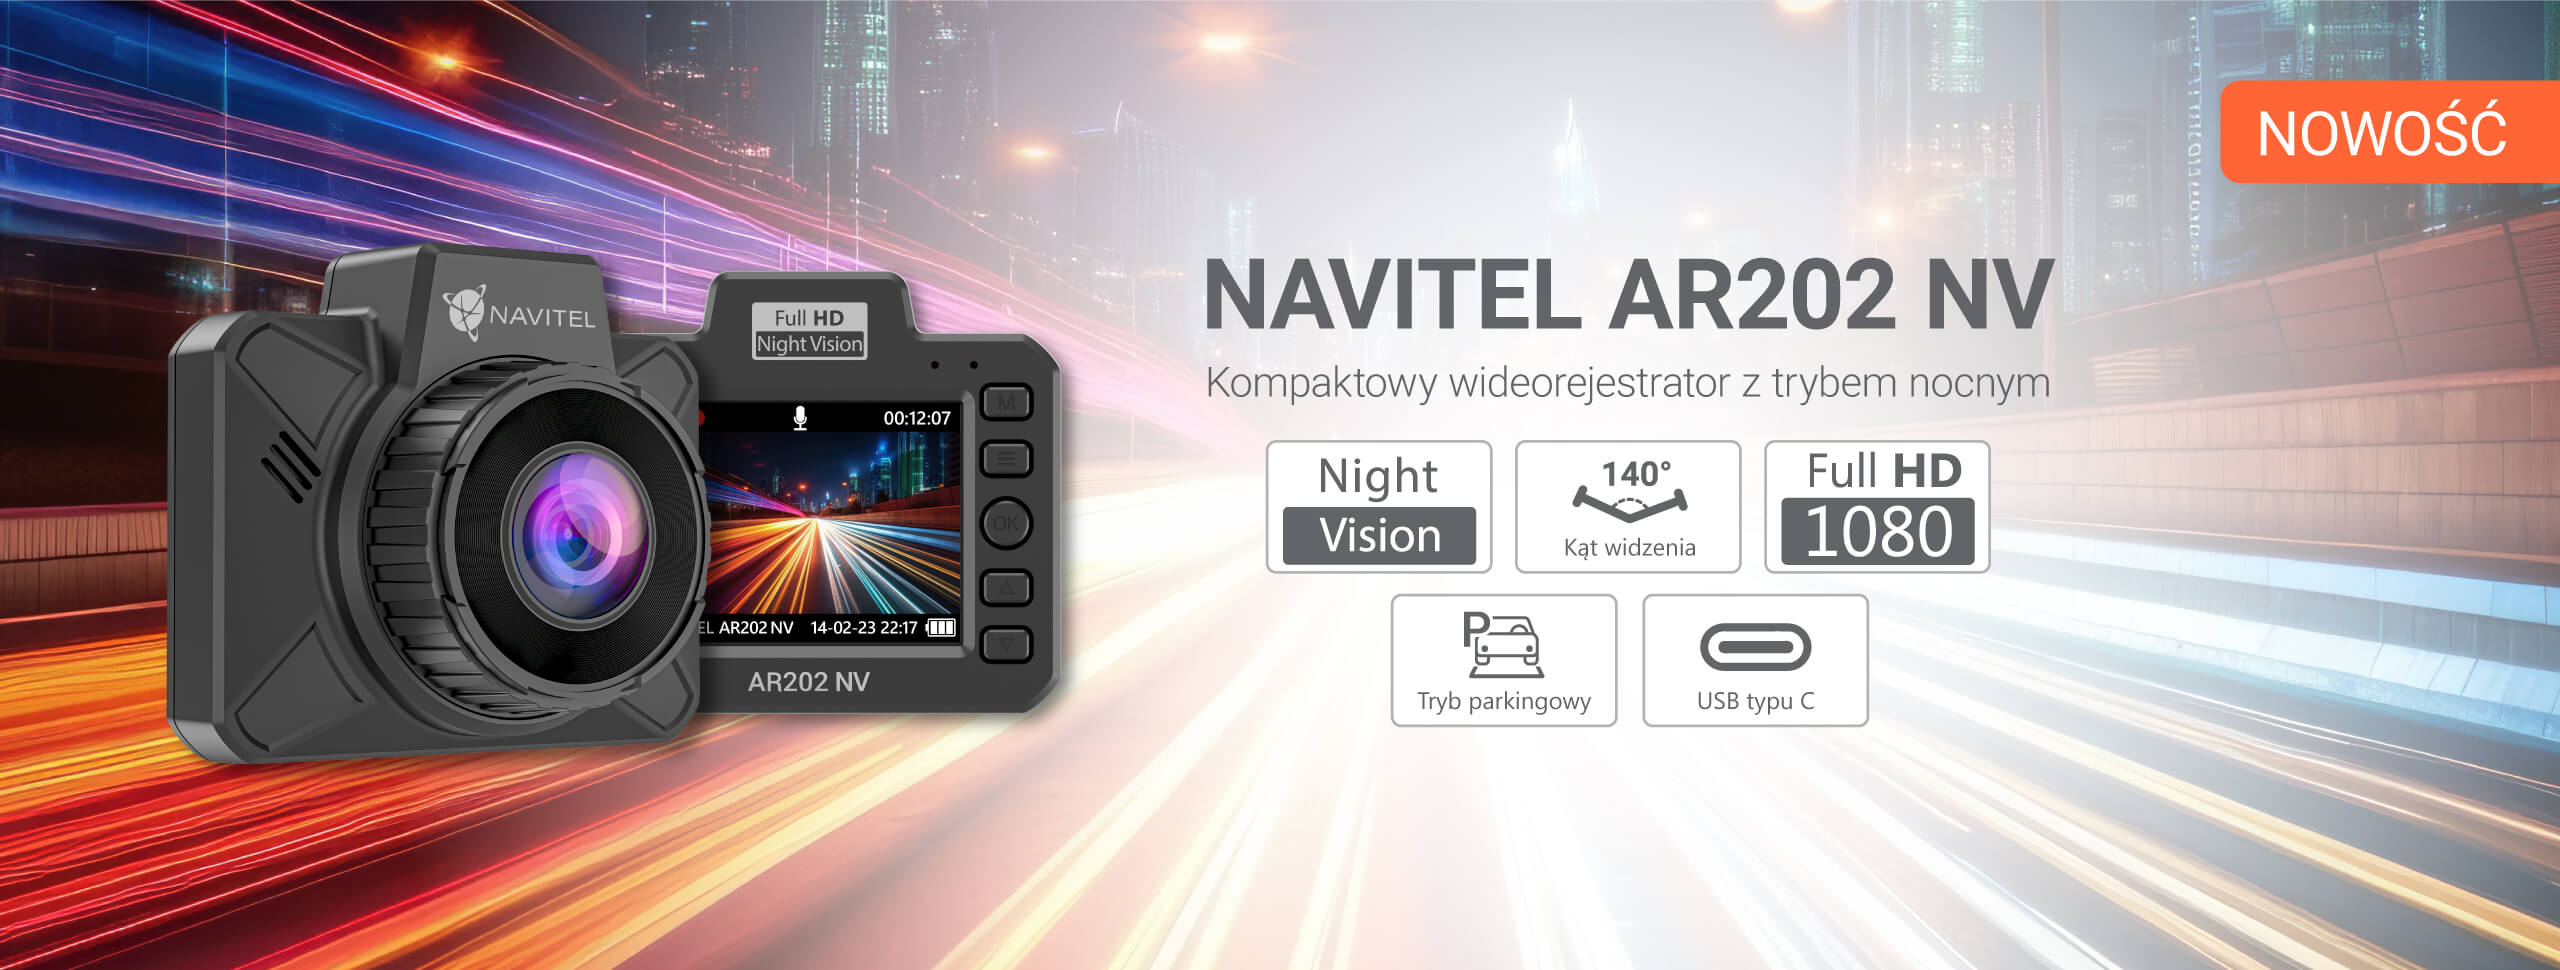 Wideorejestrator Navitel AR202 NV – nagrywanie Full HD, tryb Night Vision i 140° pole widzenia za 169,99 zł